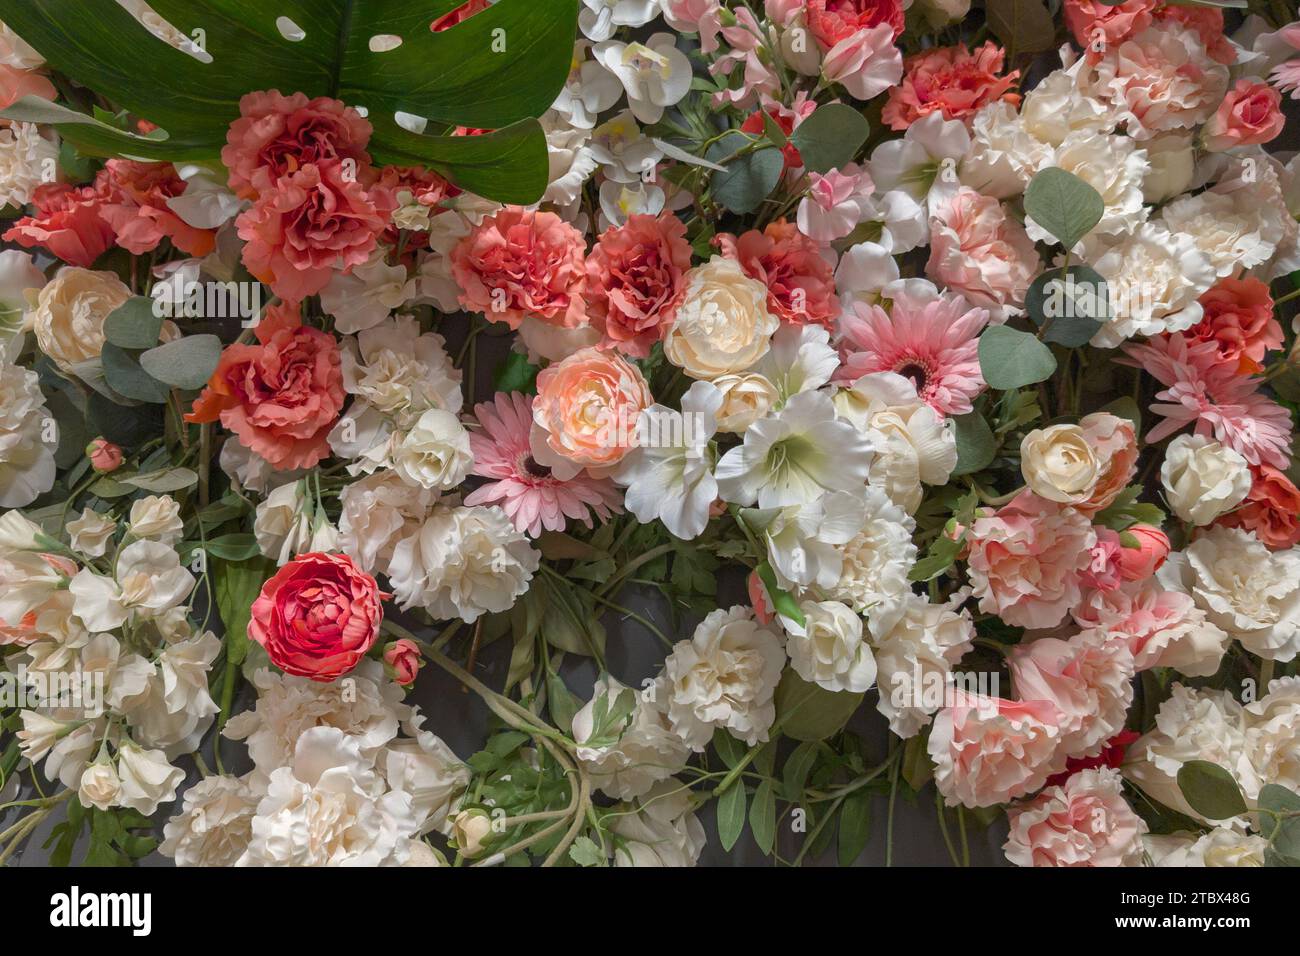 motif floral avec des fleurs roses blanches roses pour le mariage papeterie voeux papiers peints cartes de texture de fond Banque D'Images